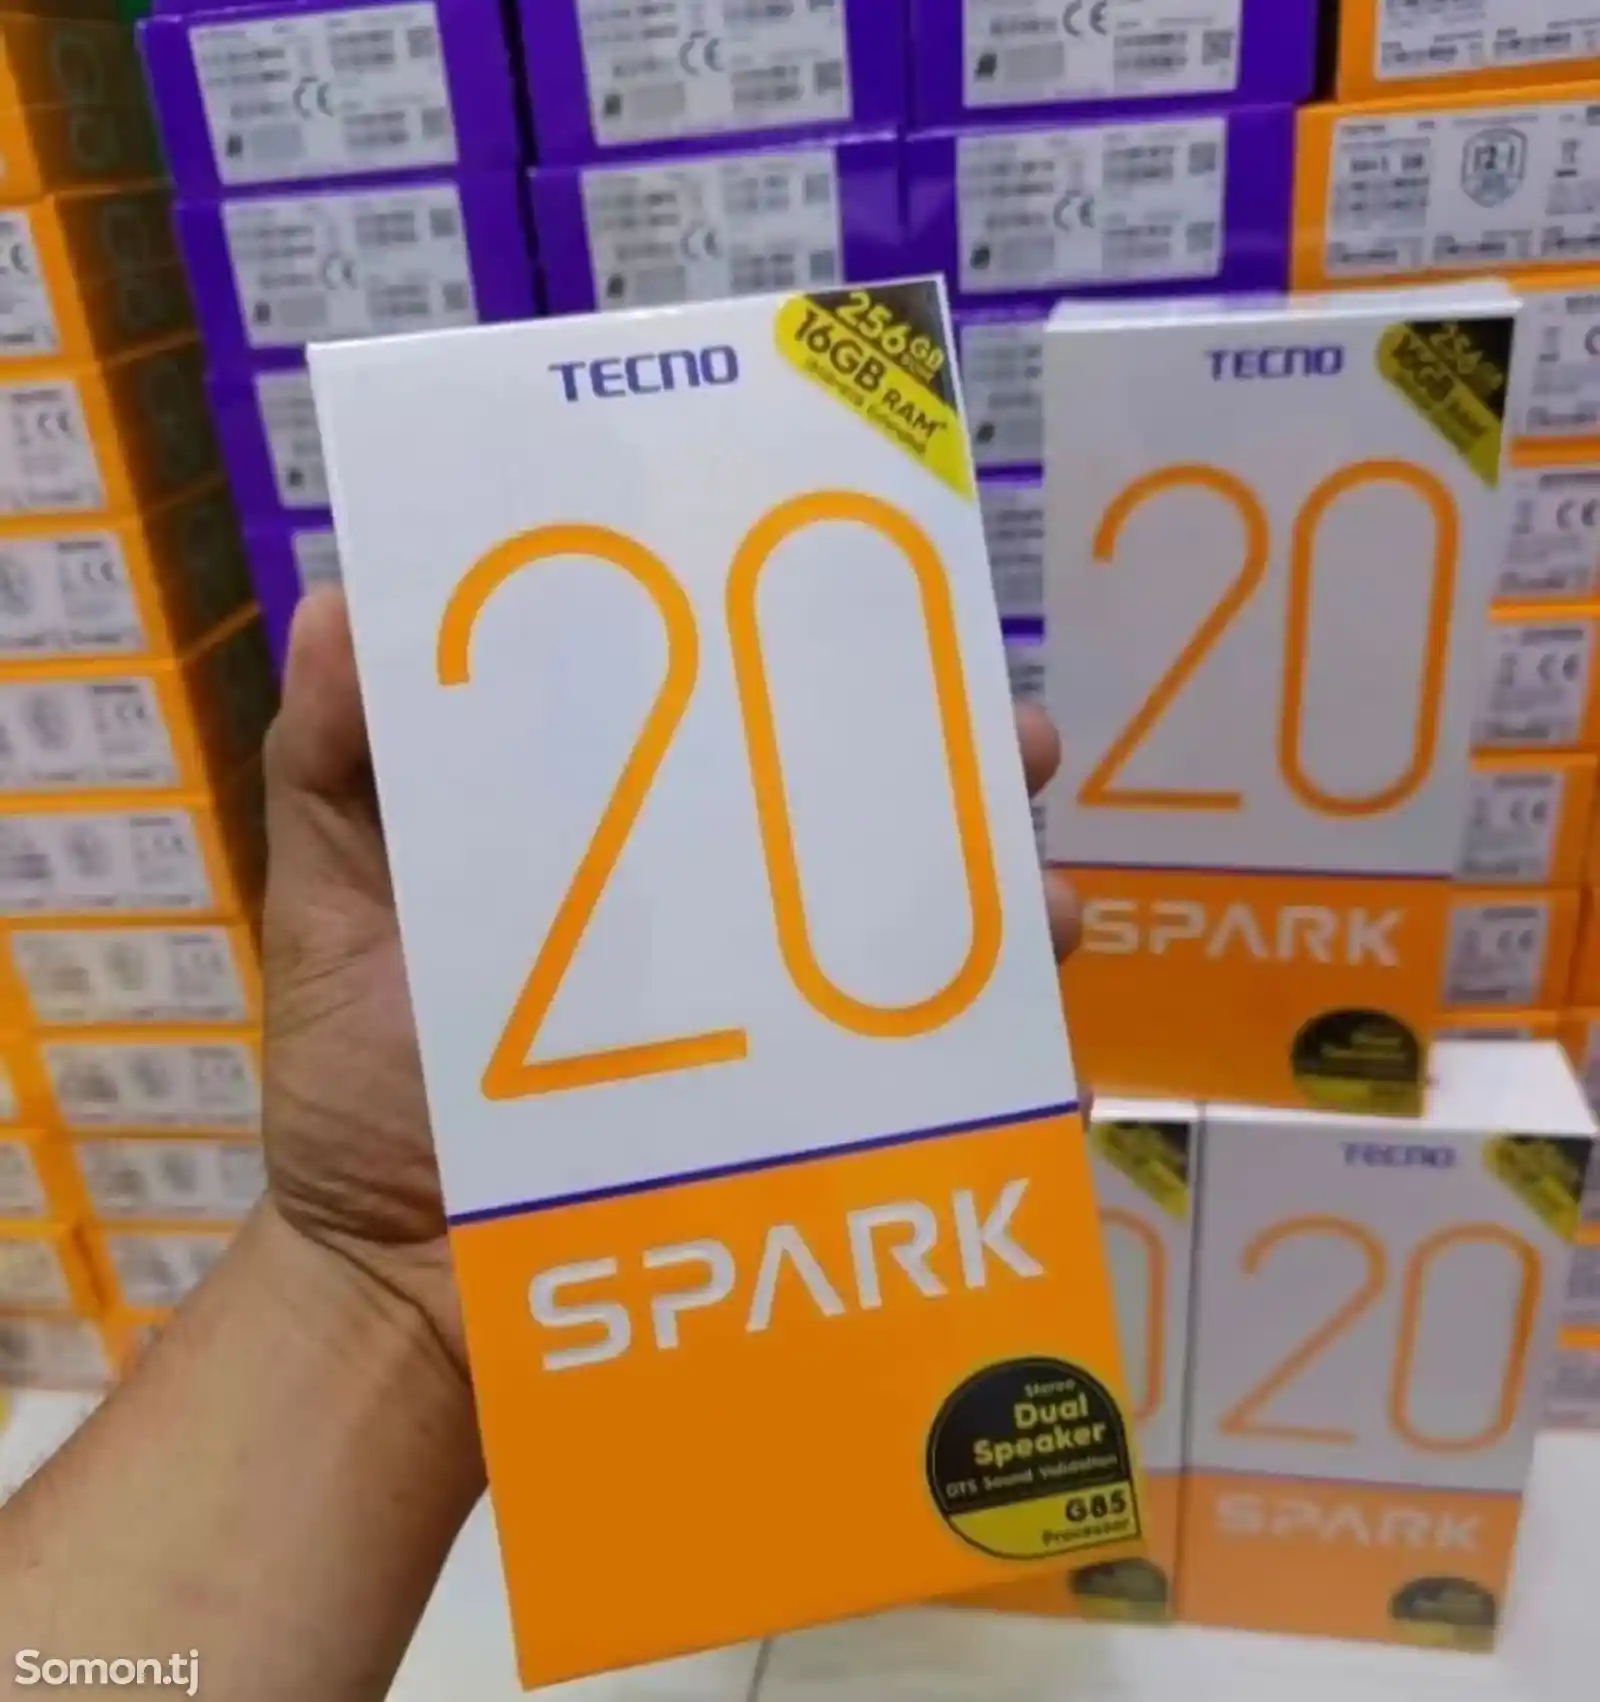 Tecno Spark 20 8+8/256Gb Global Version-2